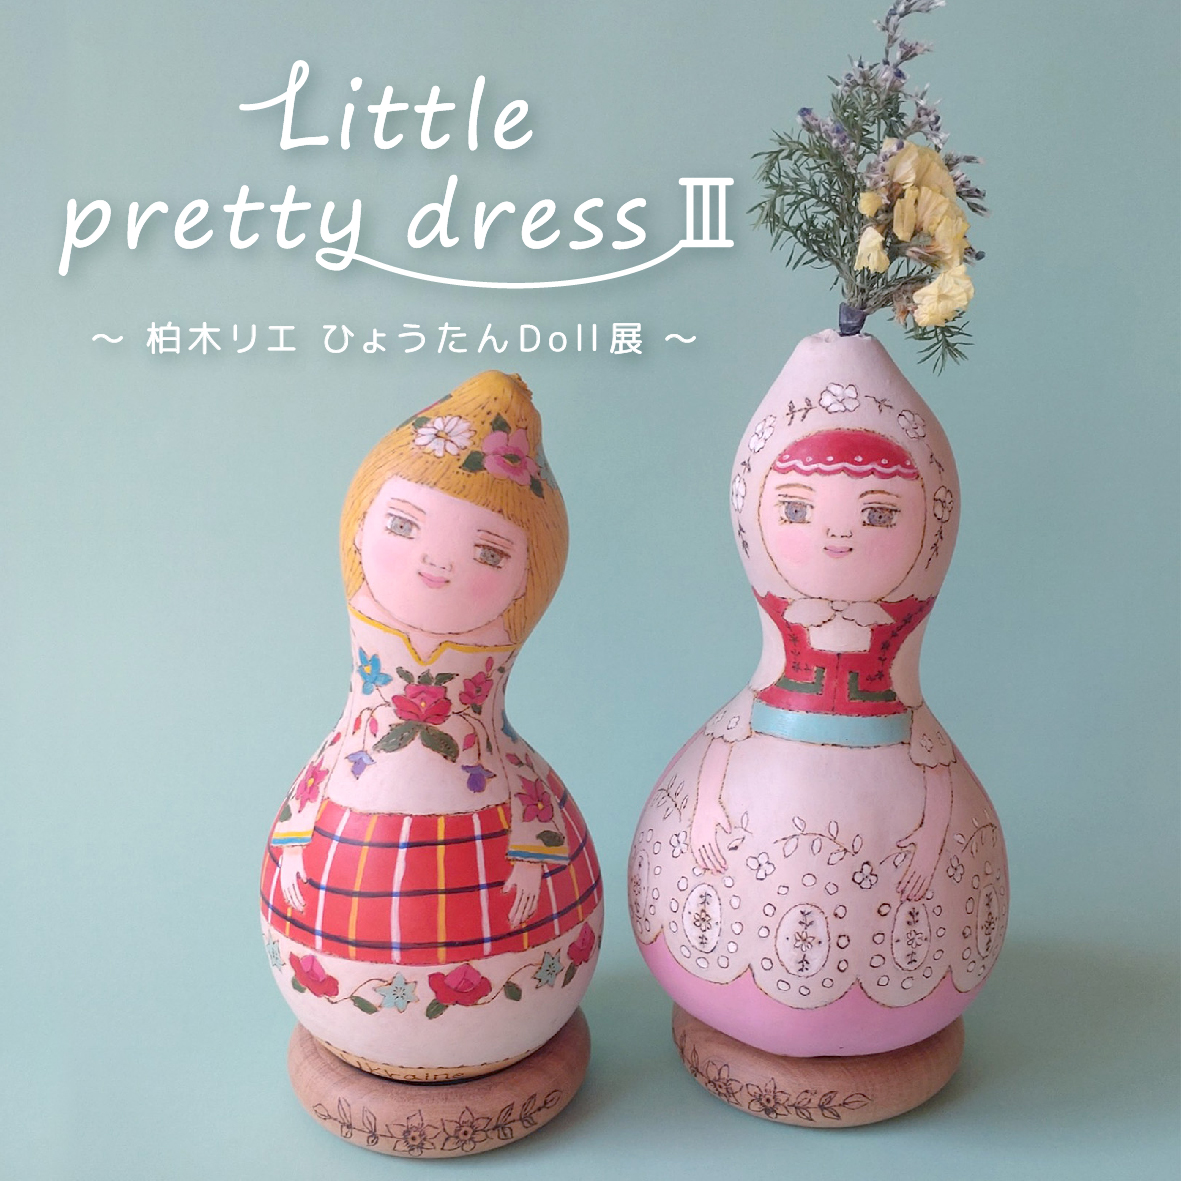 【イベント】「Little pretty dress Ⅲ」～ 柏木リエ ひょうたんDoll展 ～